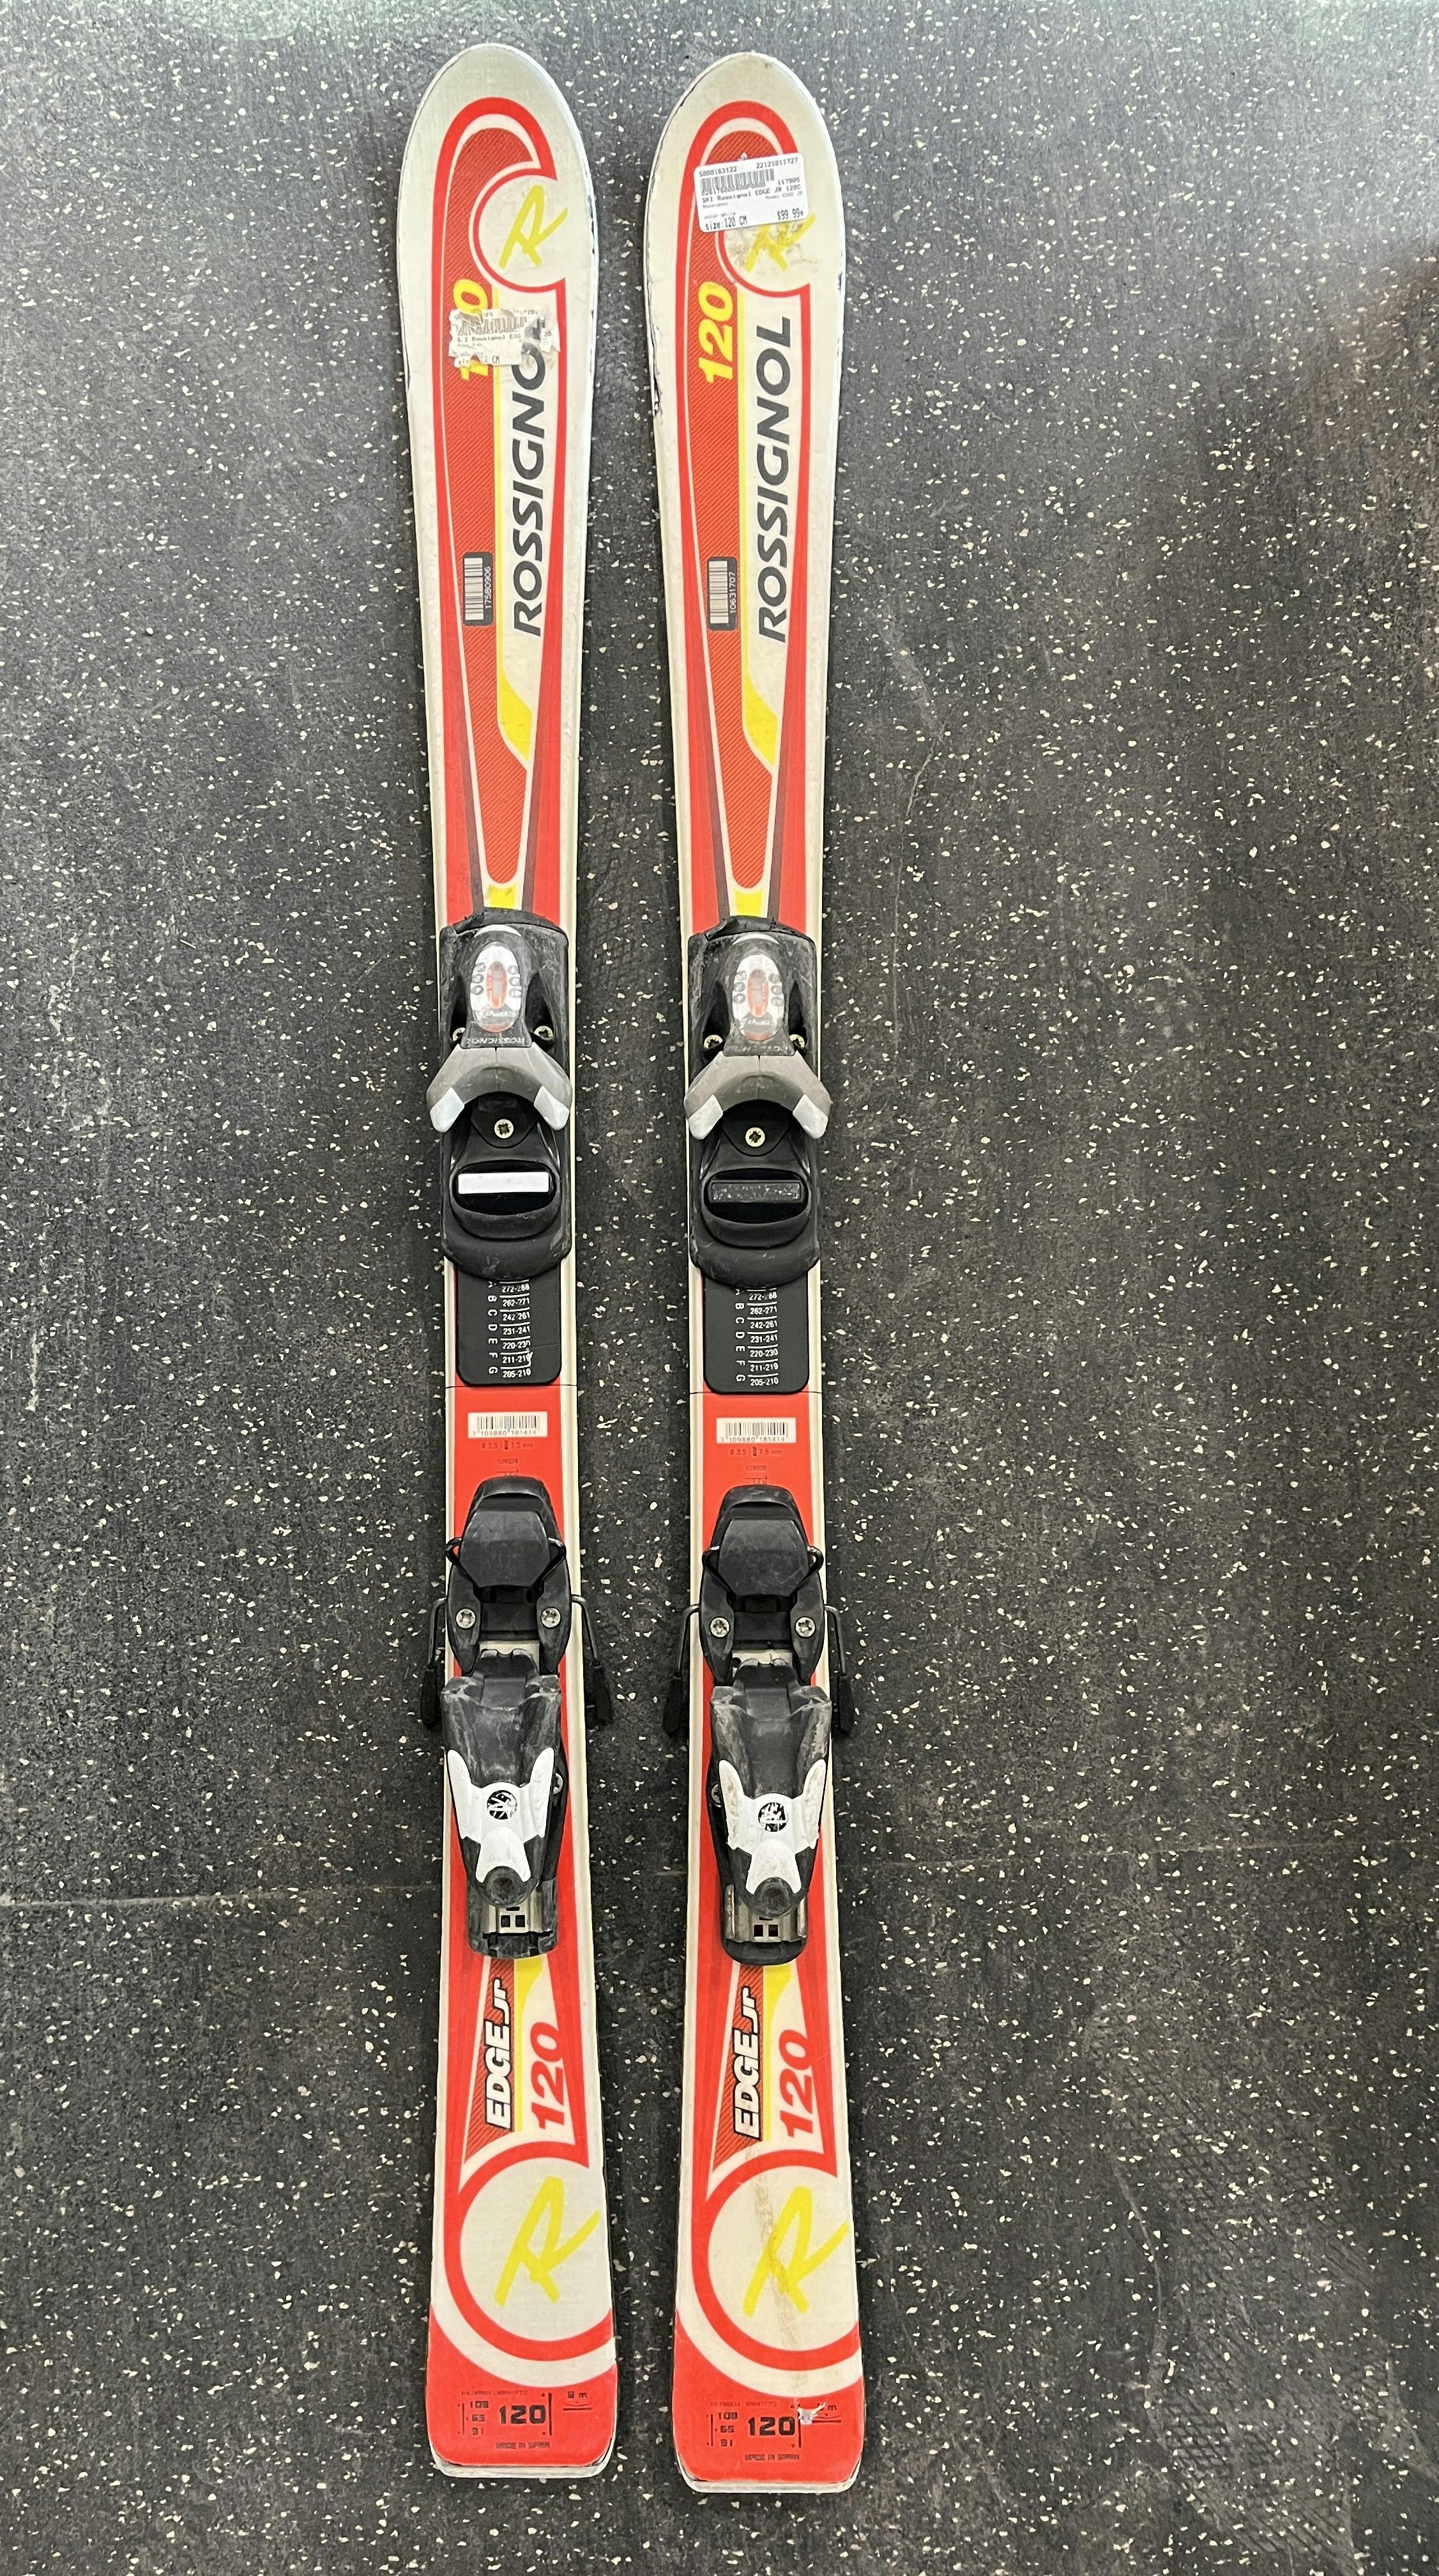 Langeブーツ205㎝ロシニョール スキー板120㎝ Langeブーツ20.5㎝ - スキー